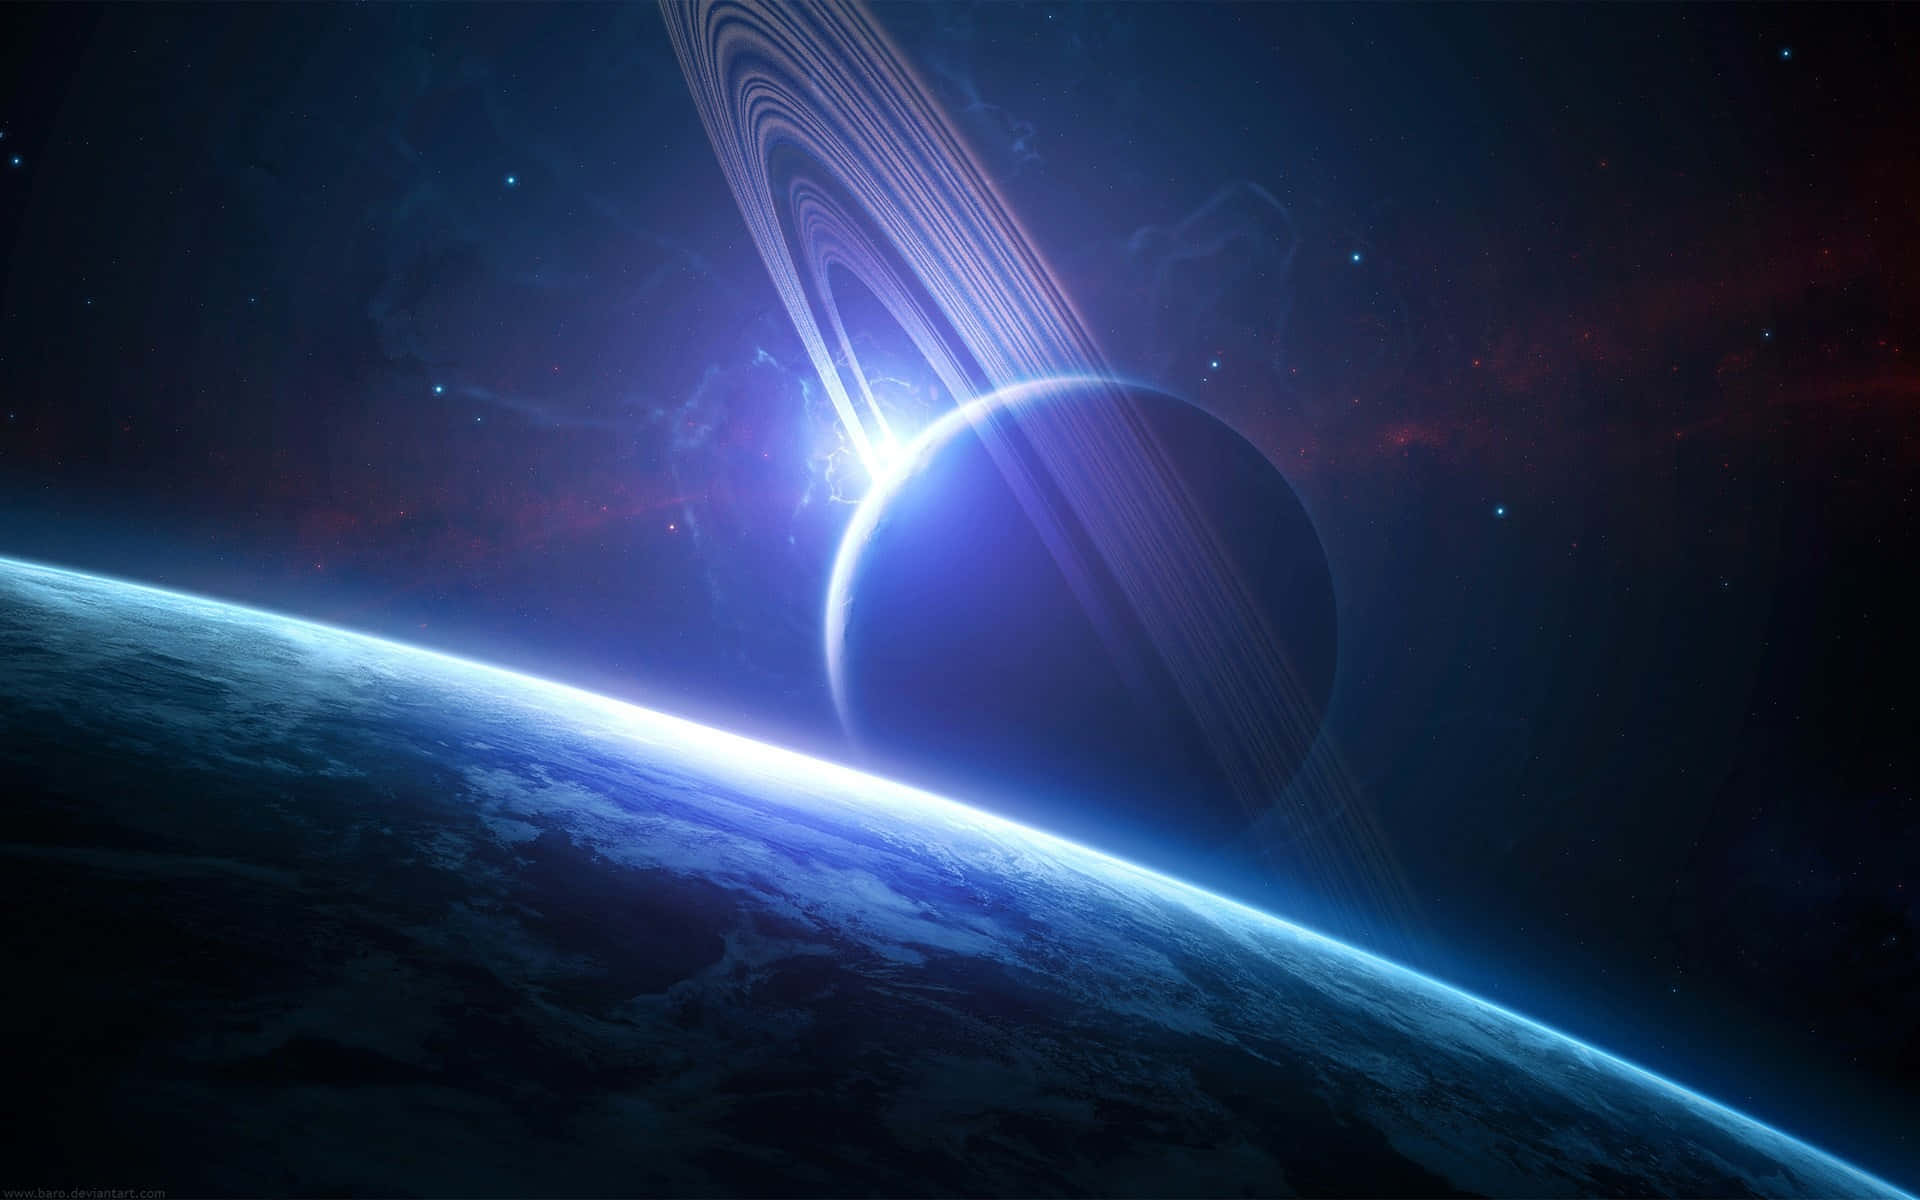 Anillosde Saturno Iluminados Contra El Cosmos.